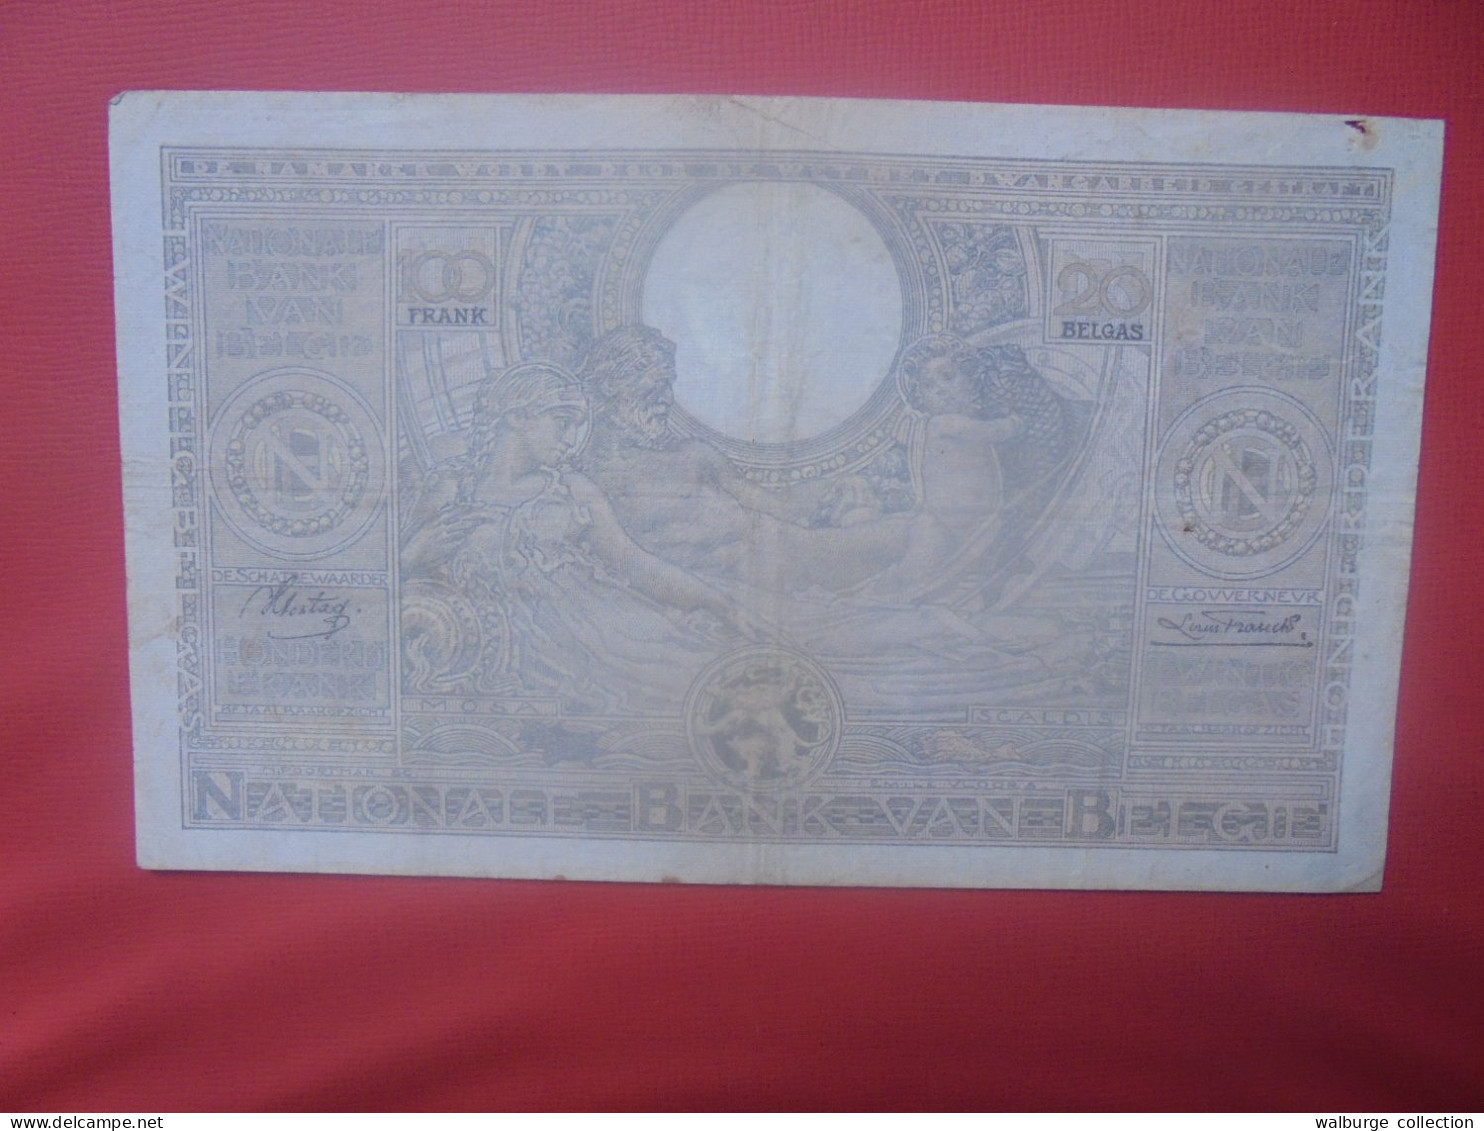 BELGIQUE 100 Francs 9-1-37 Circuler (B.18) - 100 Francs & 100 Francs-20 Belgas